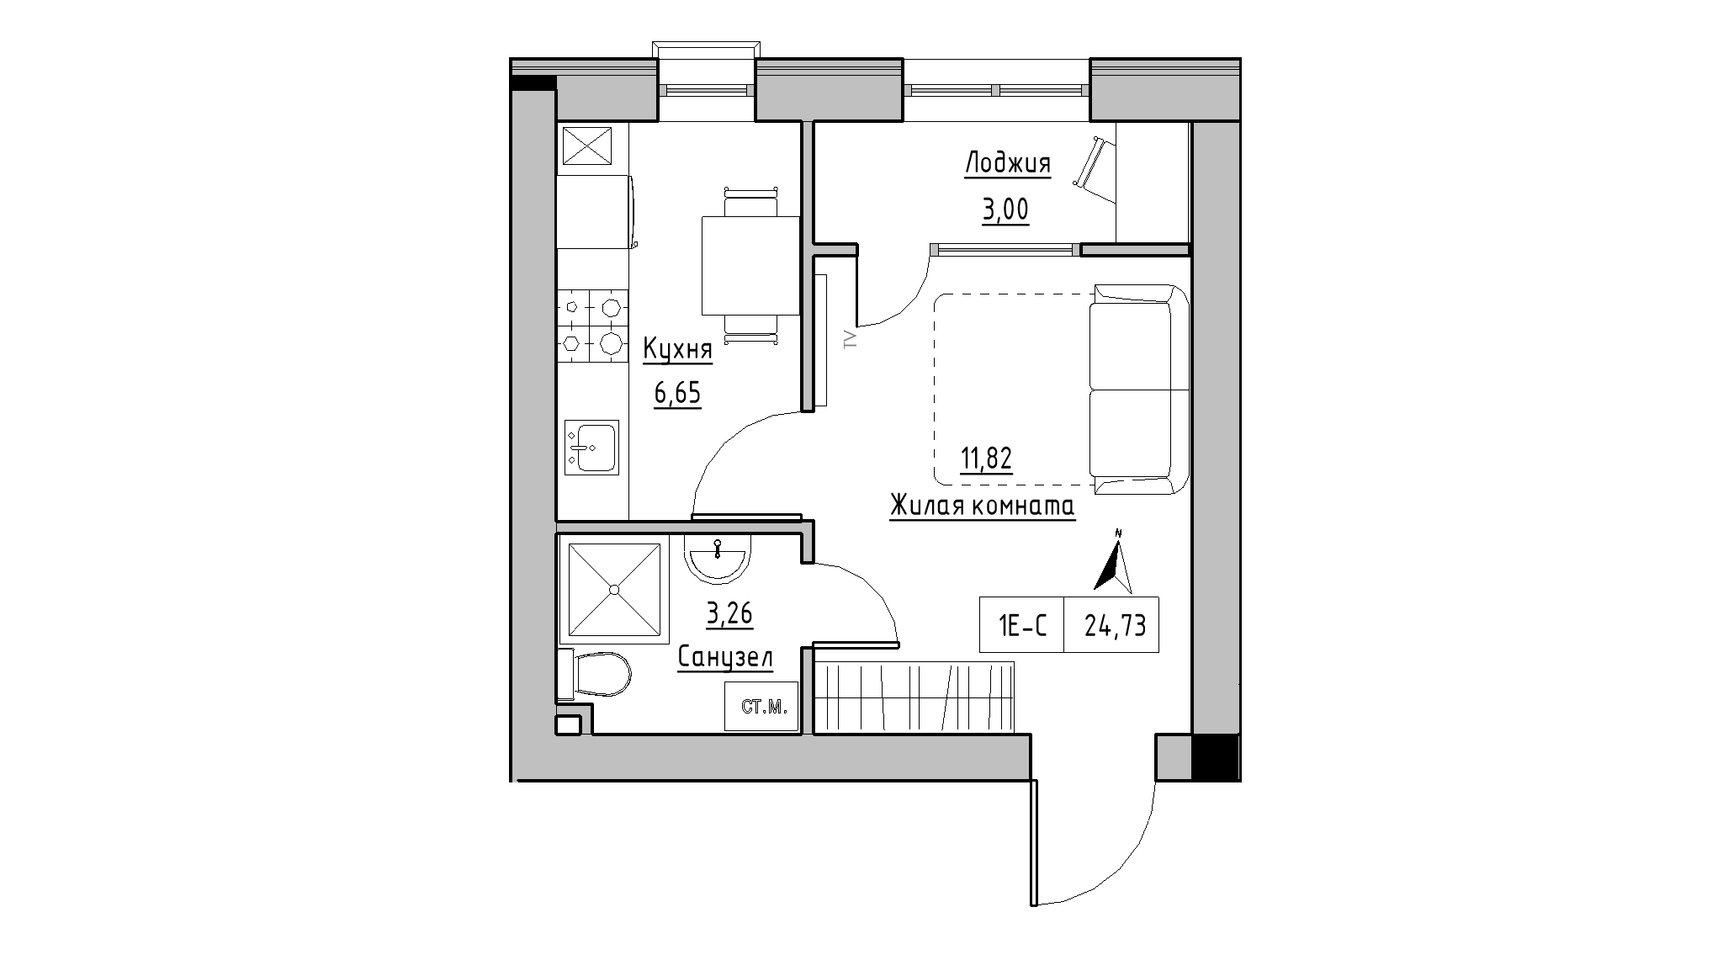 Планировка 1-к квартира площей 24.73м2, KS-010-01/0004.